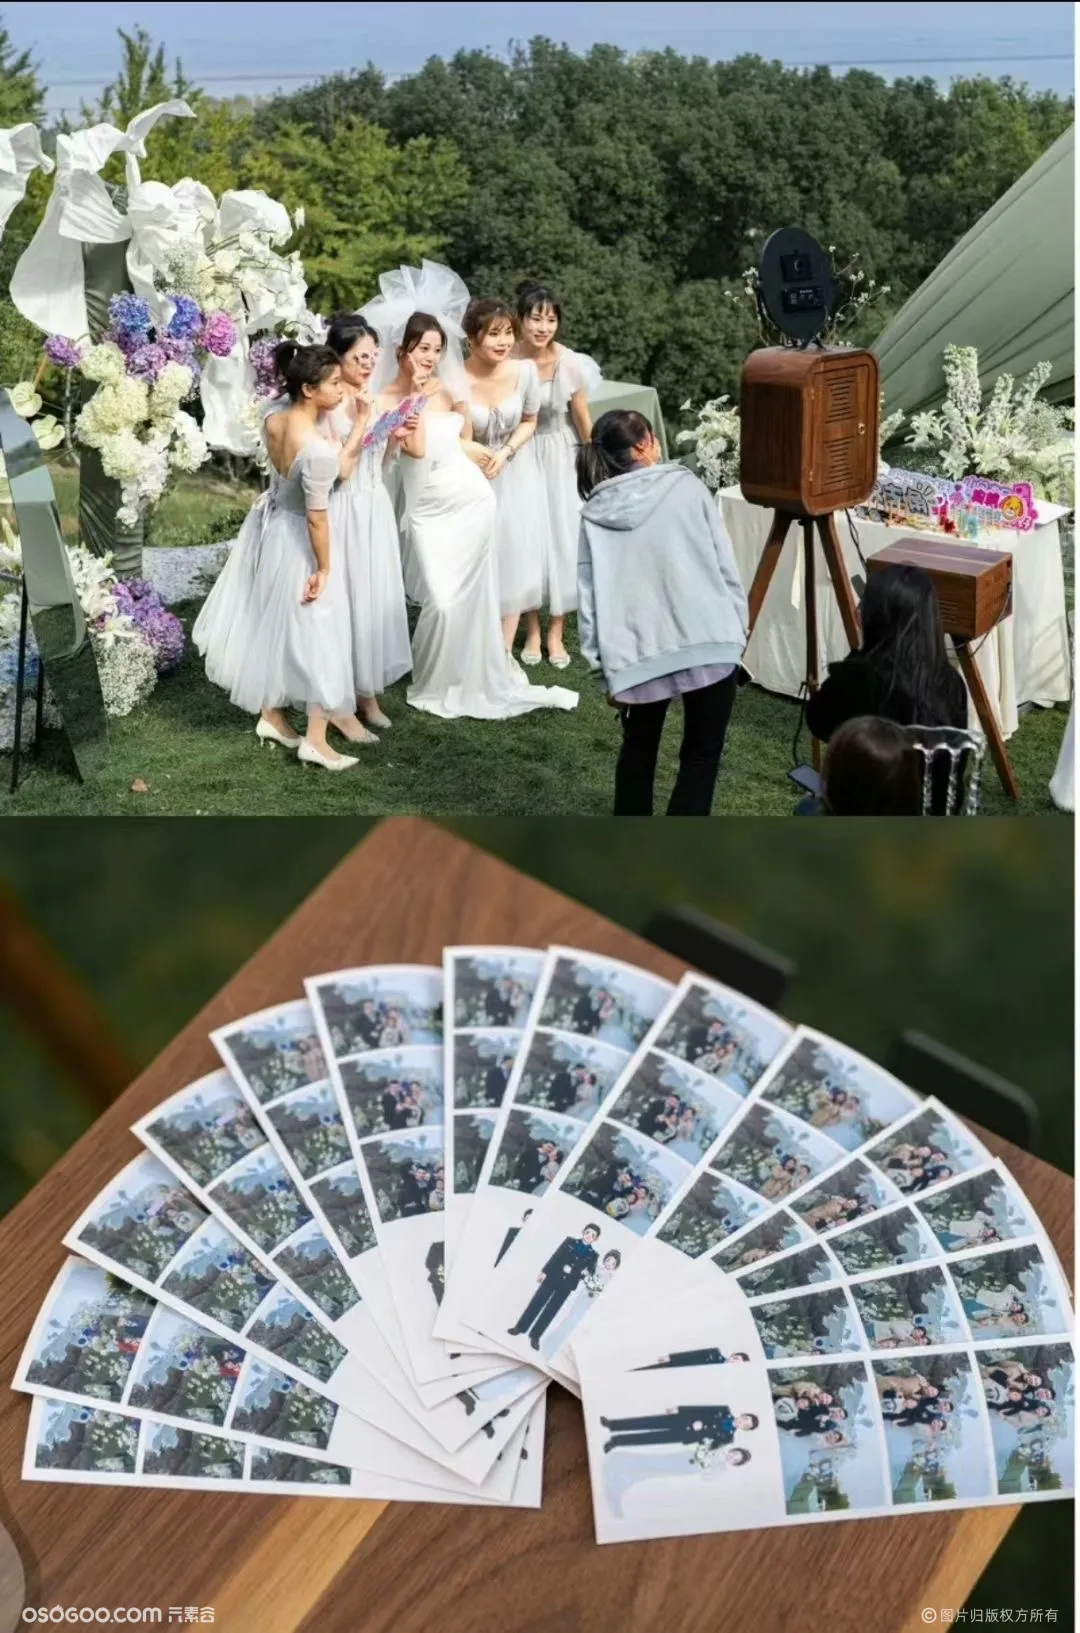 Photo Booth 婚礼拍照机 即刻出片 定制化照片边框